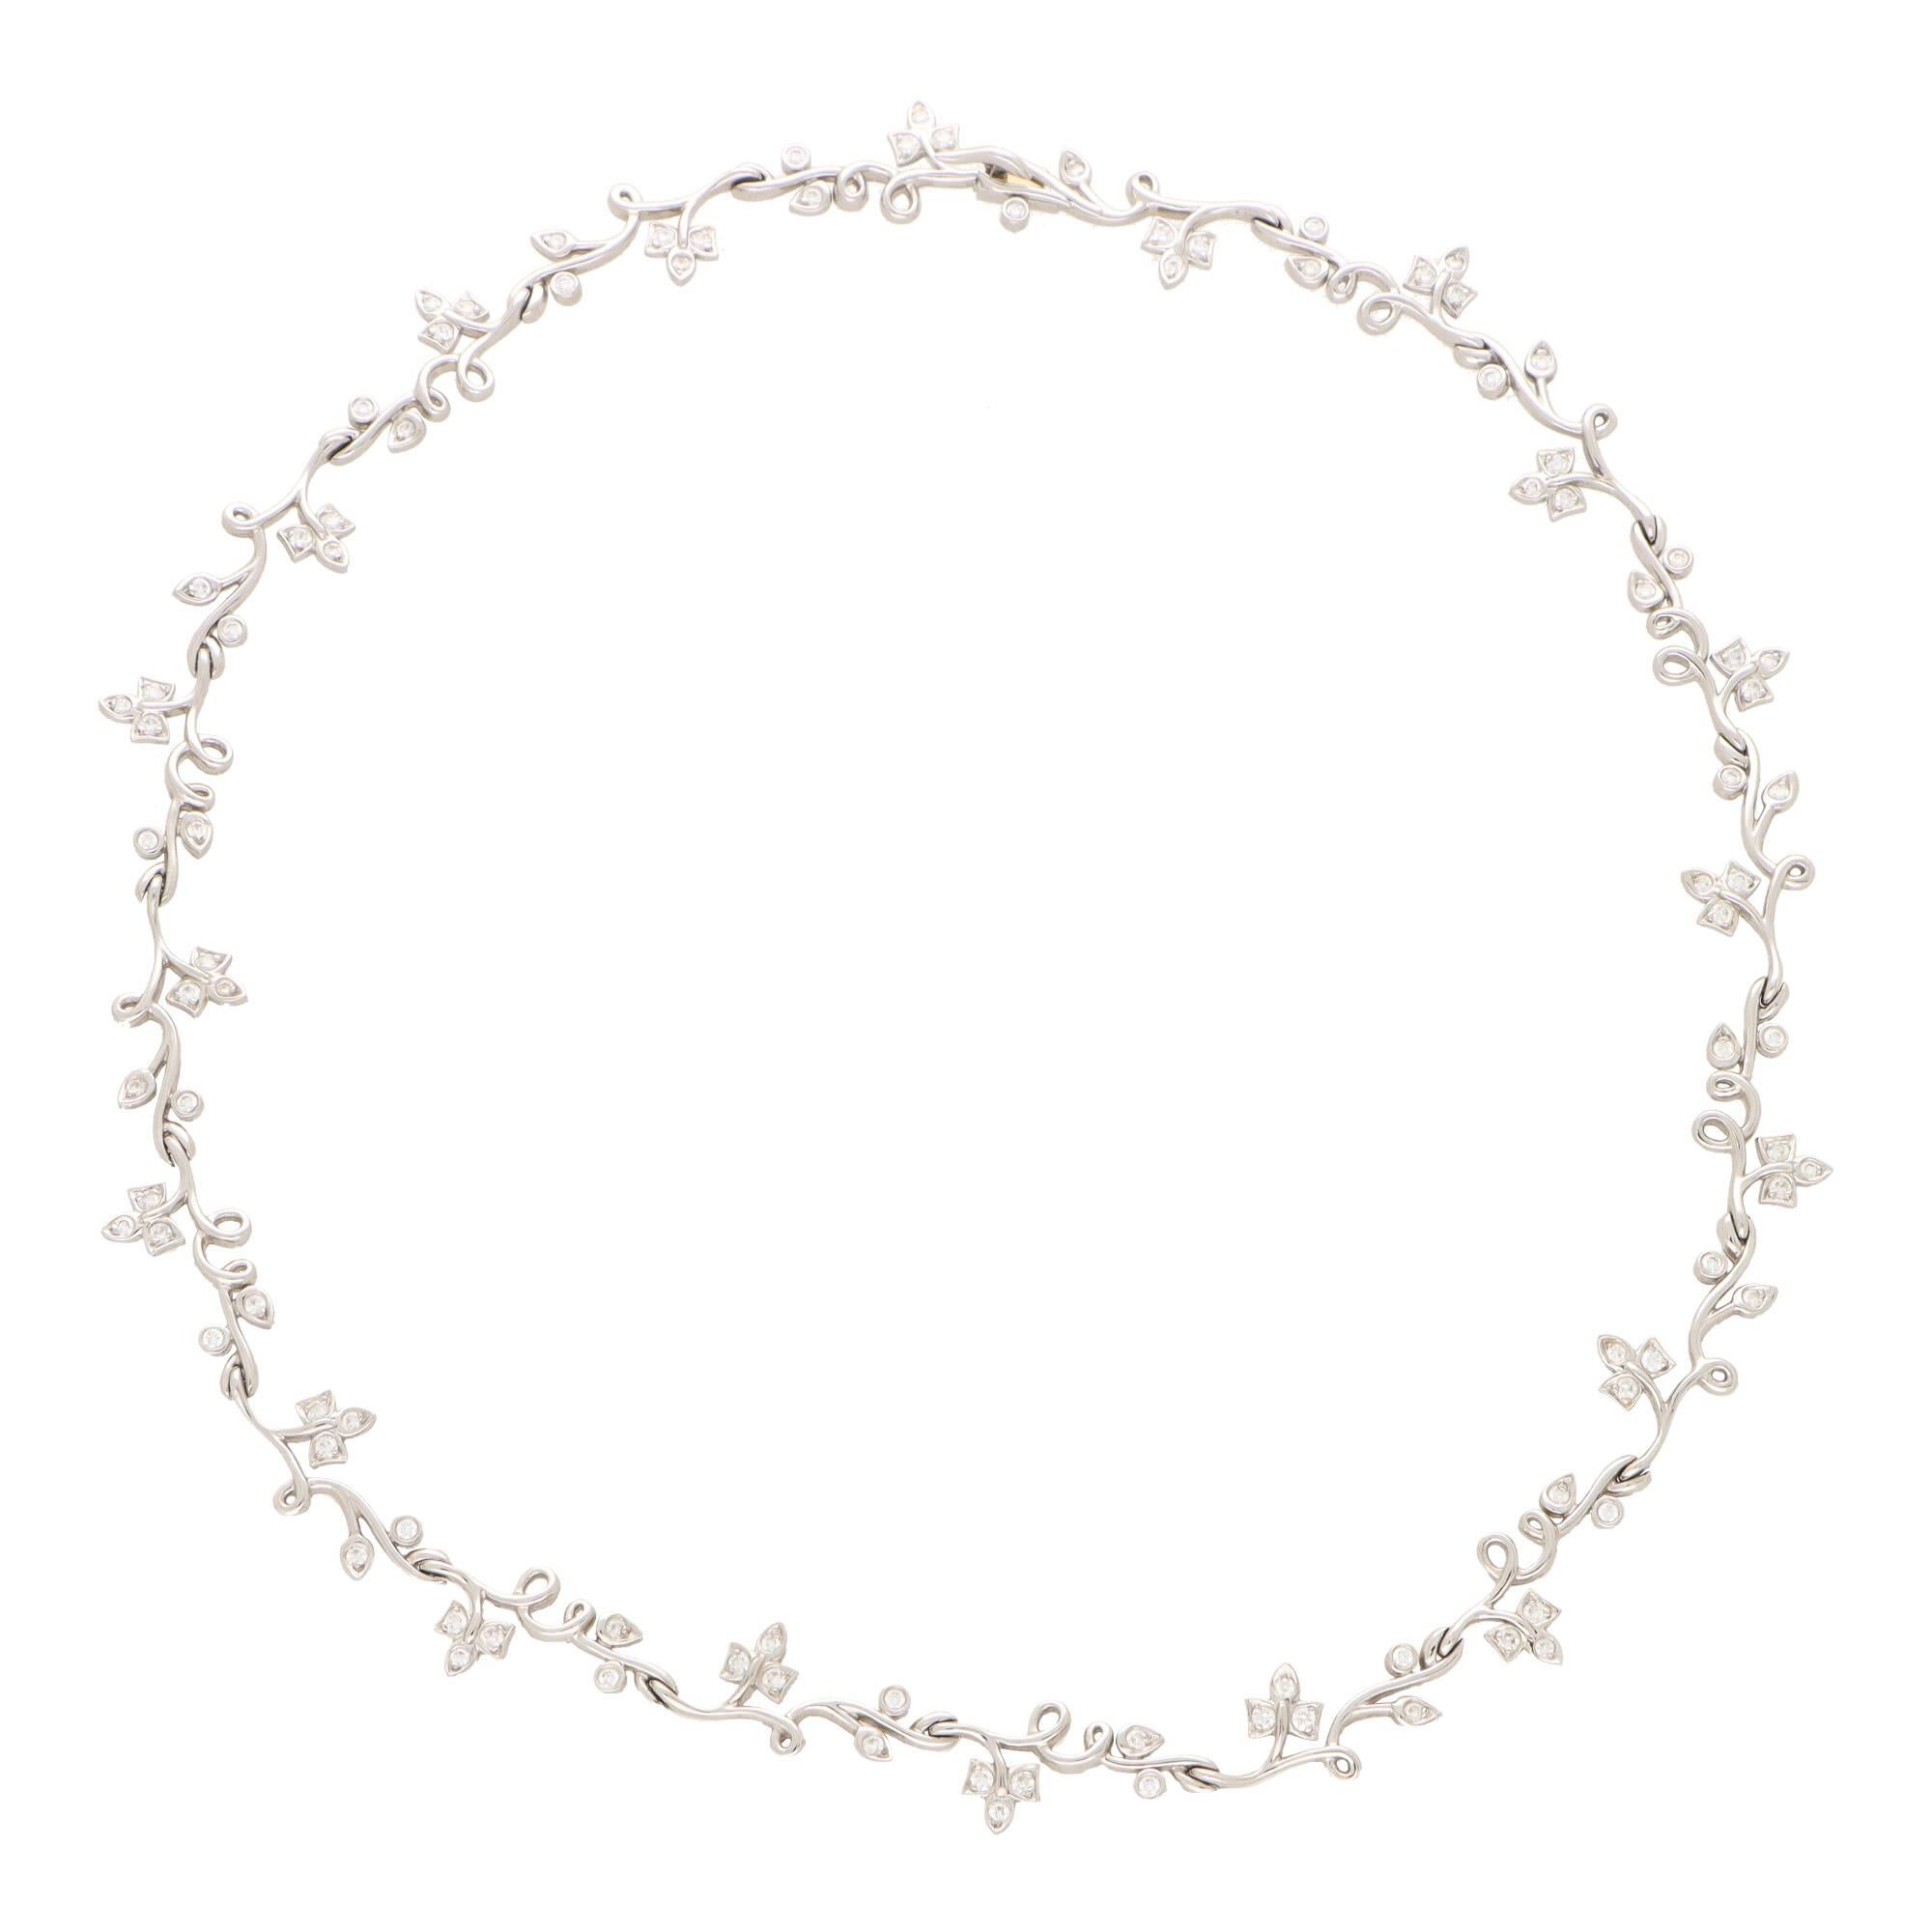 Magnifique collier en diamants 'Ivy' de Tiffany & Co., serti en platine.

Le collier est composé de 20 maillons/panneaux individuels en diamant de style lierre et se pose magnifiquement une fois sur le cou. Le collier est fabuleux à porter et, grâce